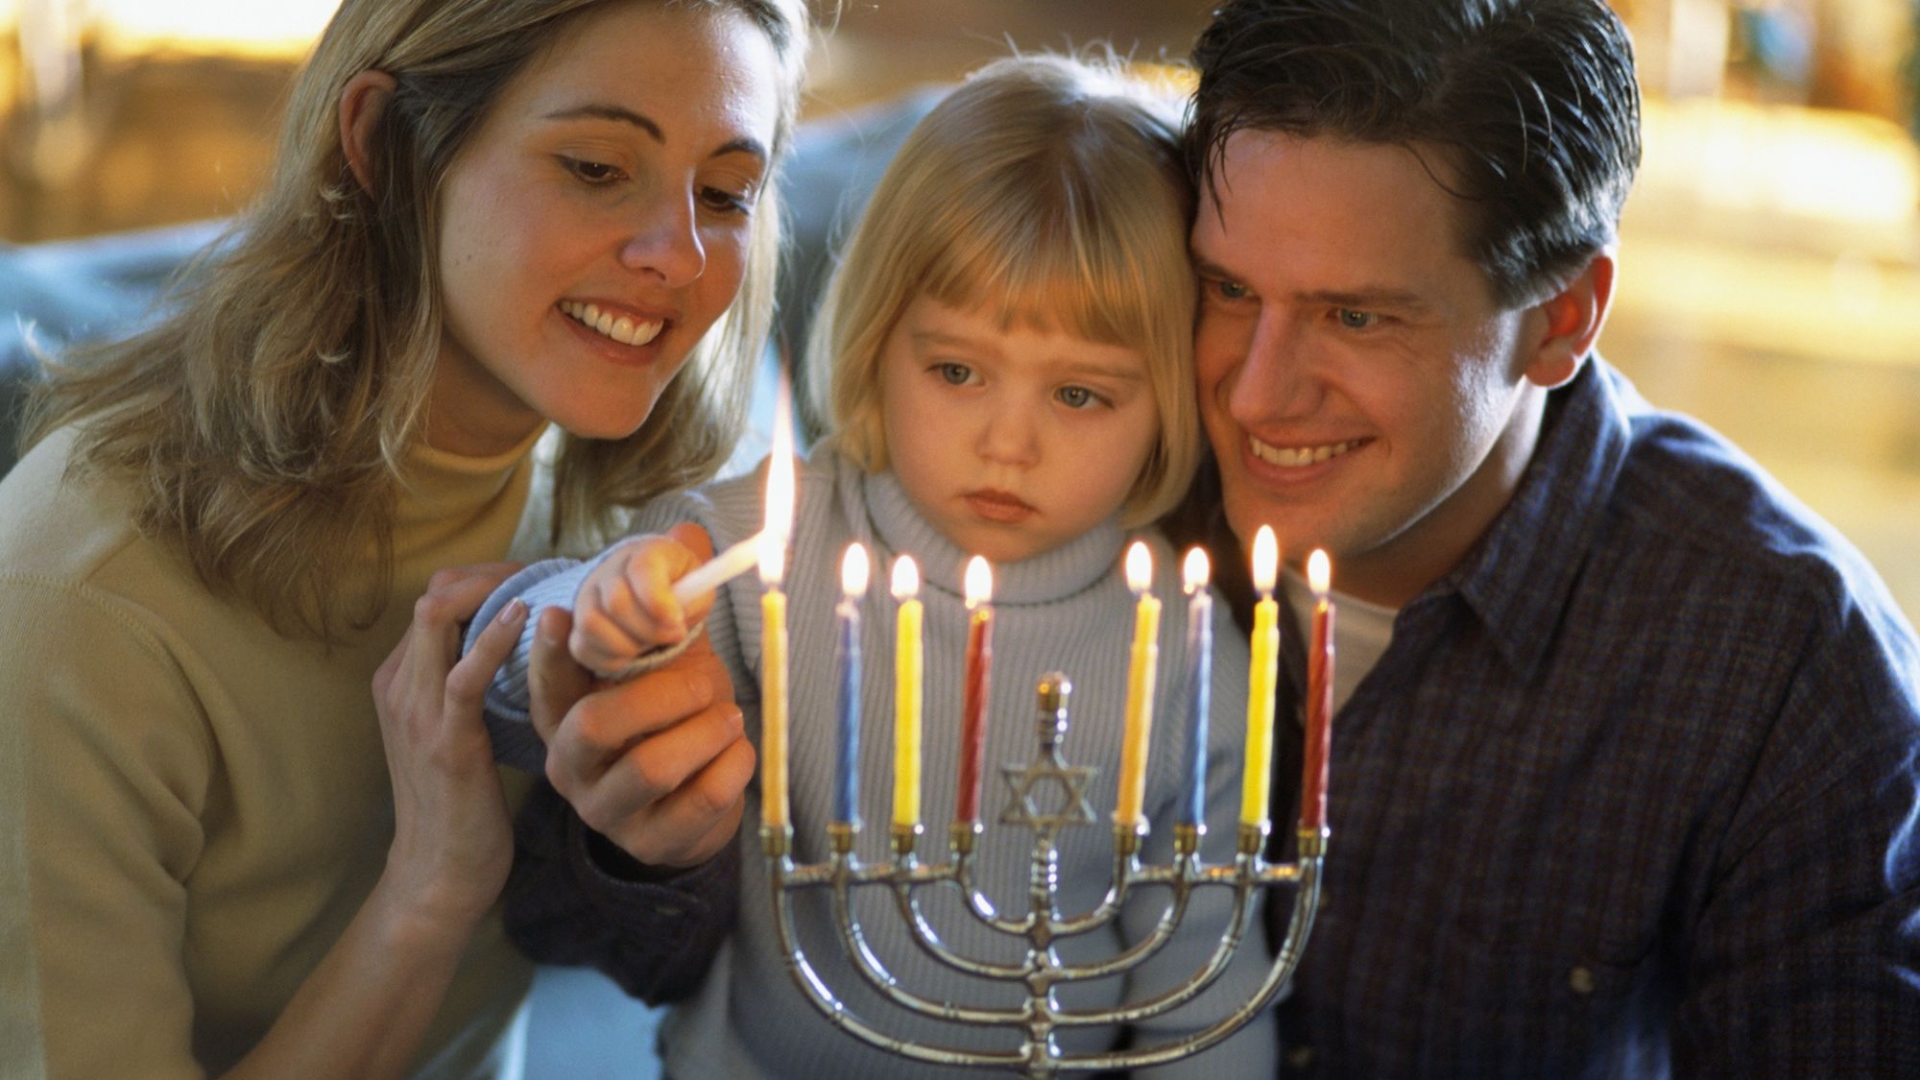 1038 happy hanukkah history meaning celebrations3